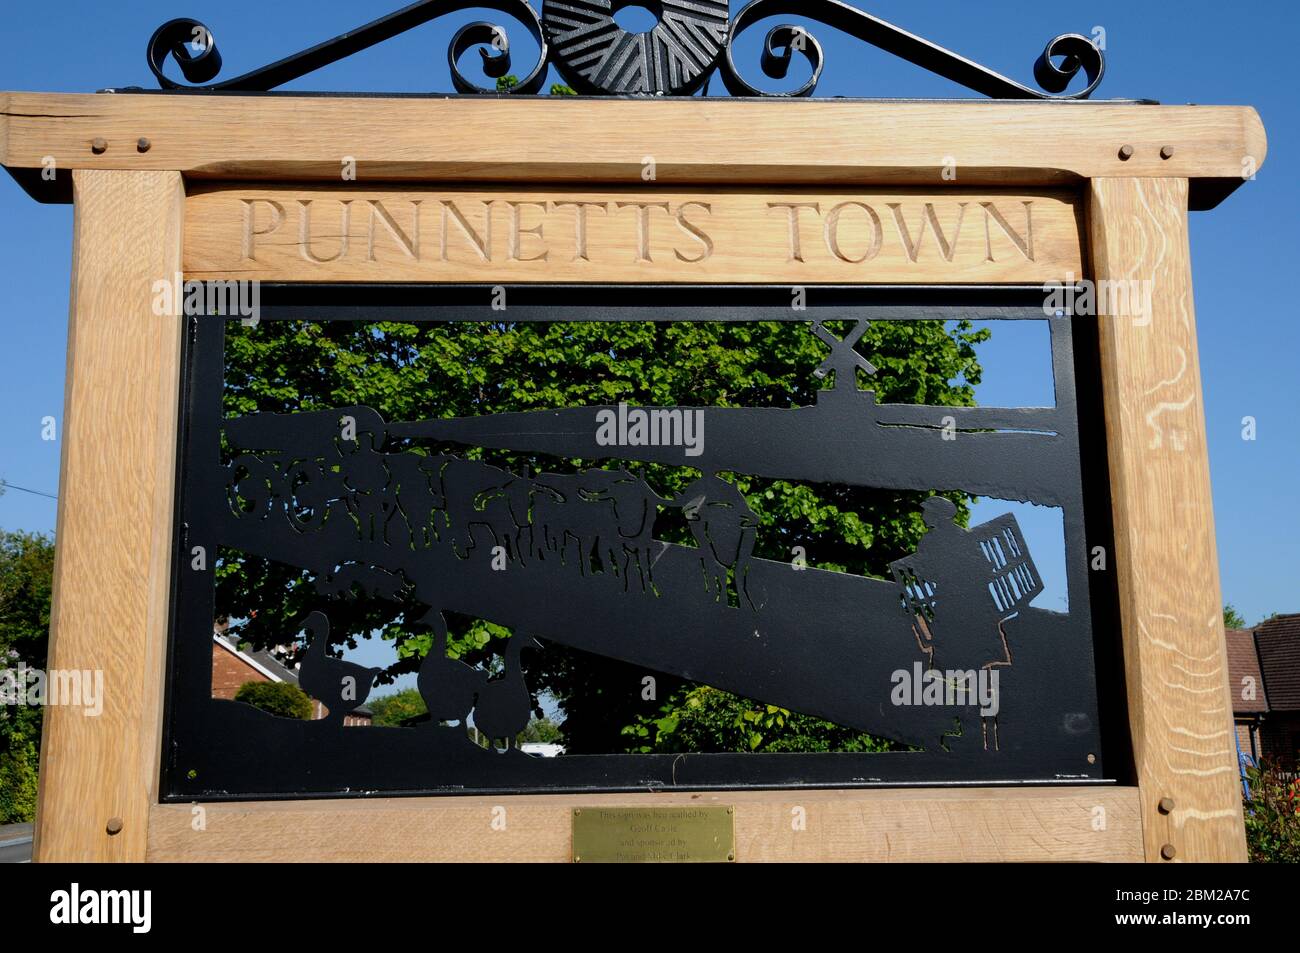 Le panneau du village, érigé en 2020, au centre du petit village est de Sussex de Punnetts Town dans le Sussex Weald. Banque D'Images